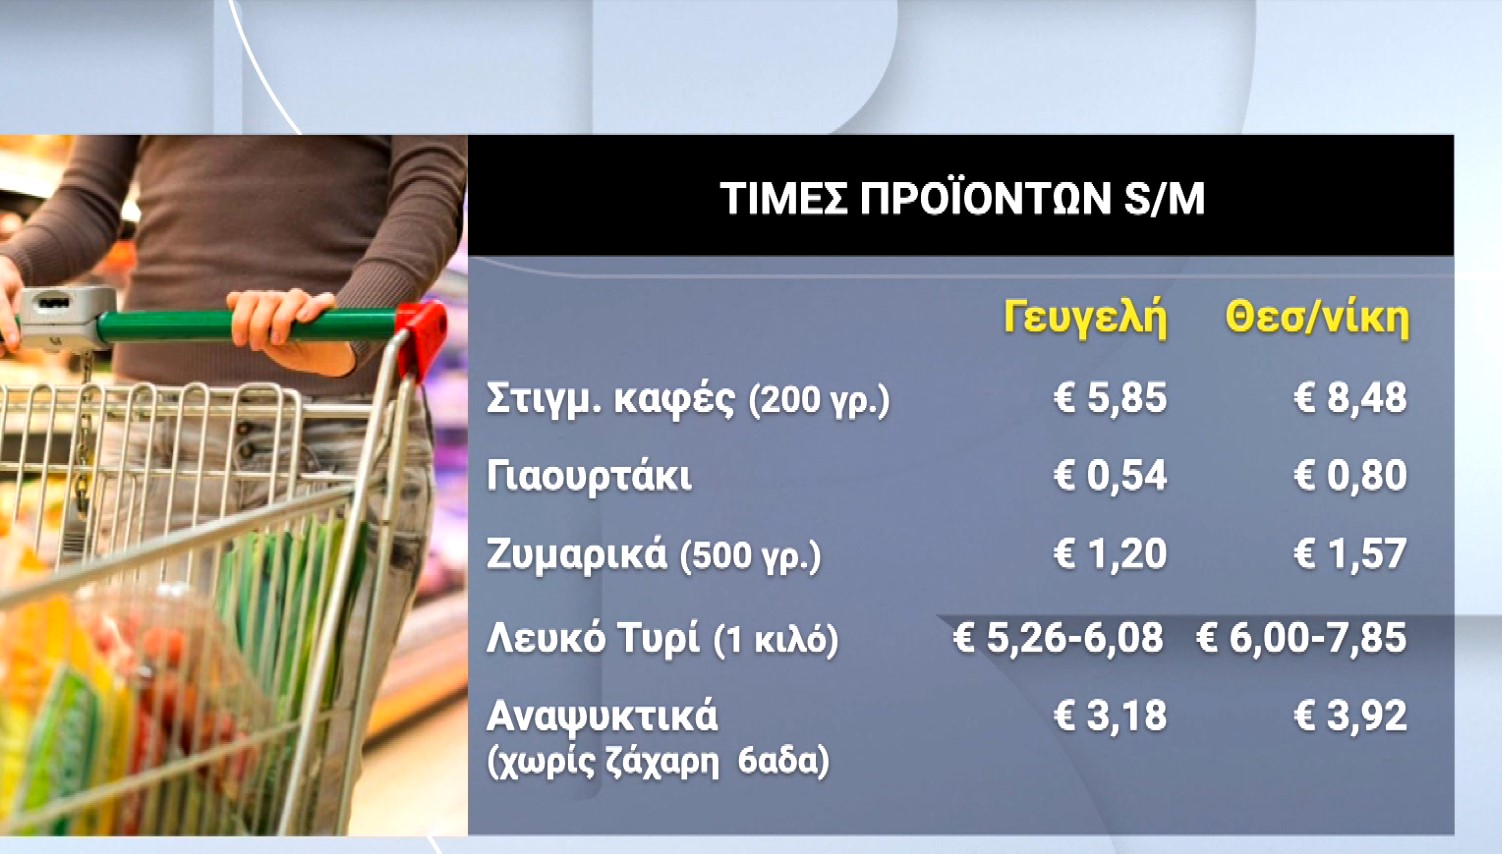 Αυτοψία της ΕΡΤ3 στη Γευγελή – Έλληνες πηγαίνουν στη γειτονική χώρα για φθηνά ψώνια και καύσιμα